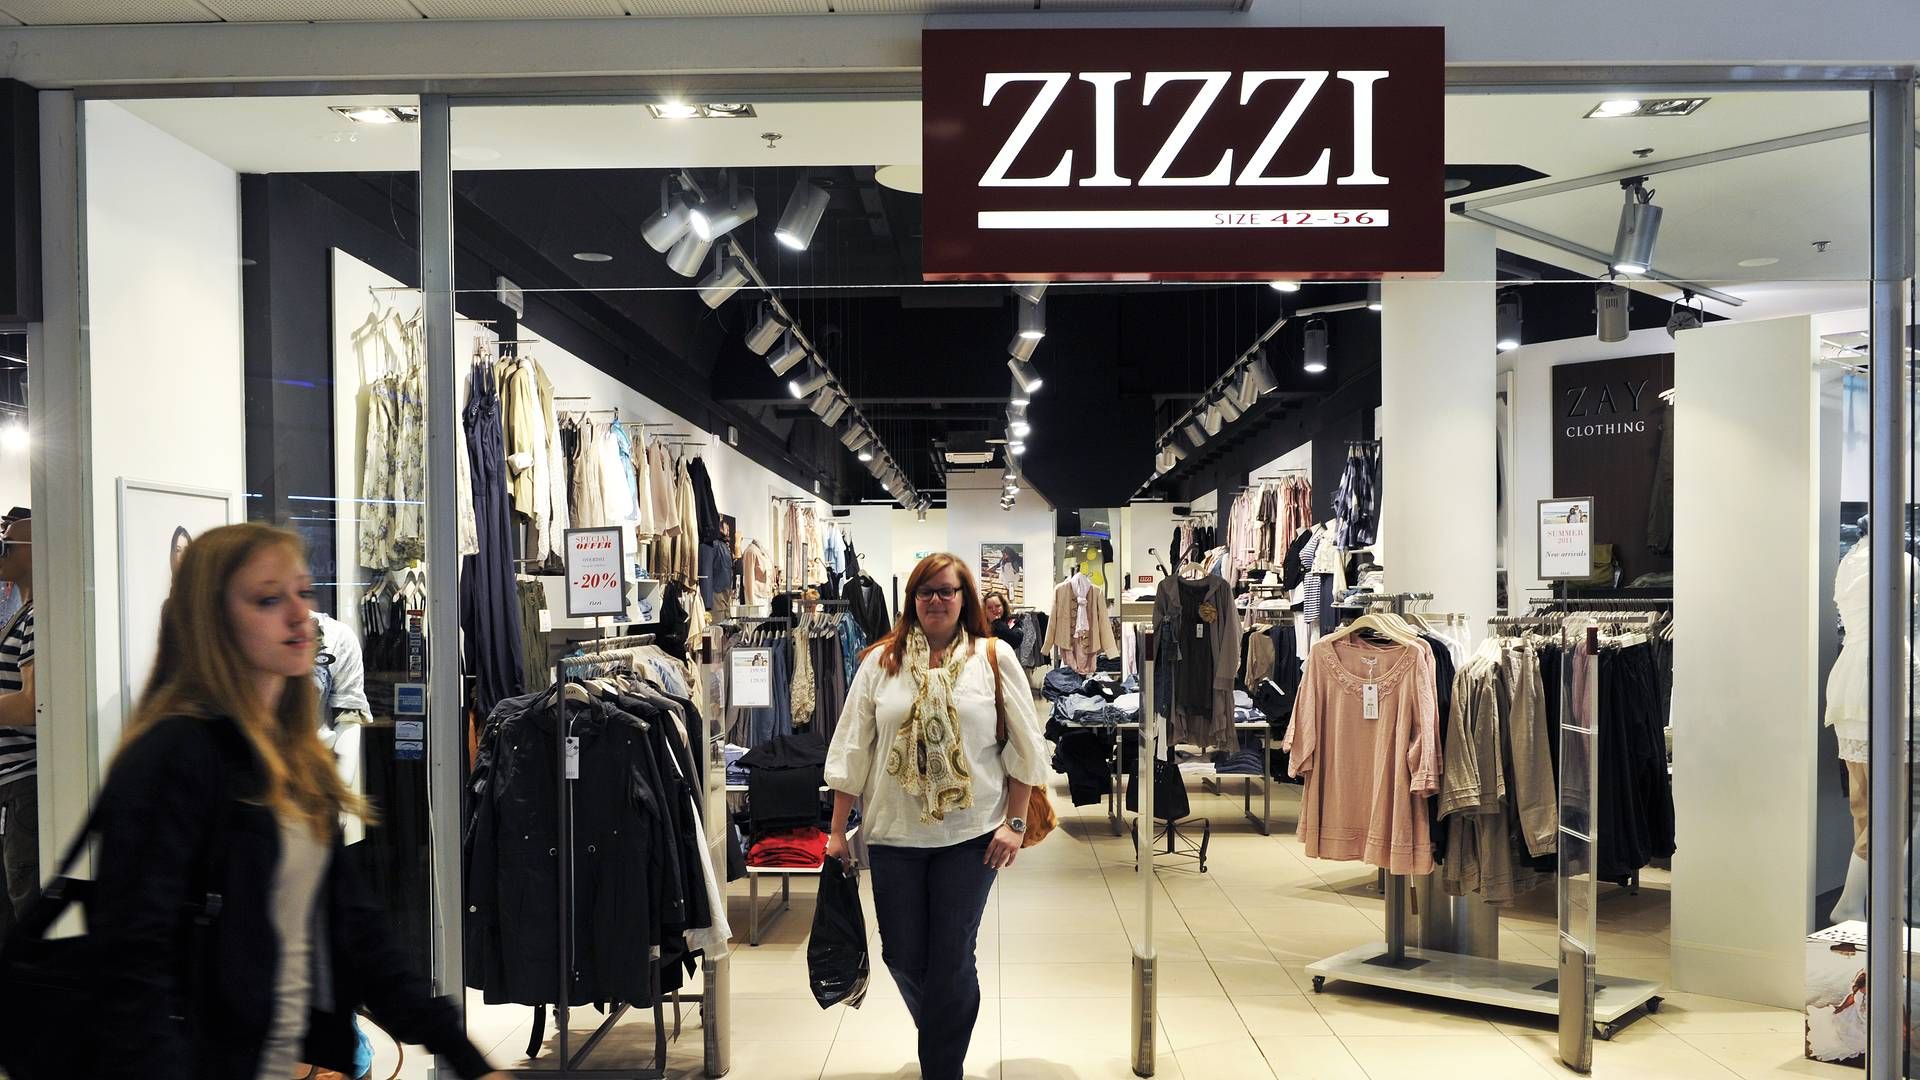 Selskabet Ball Group, der står bag modemærket Zizzi, skifter nu navn til Zizzi. | Foto: Mik Eskestad/ERH